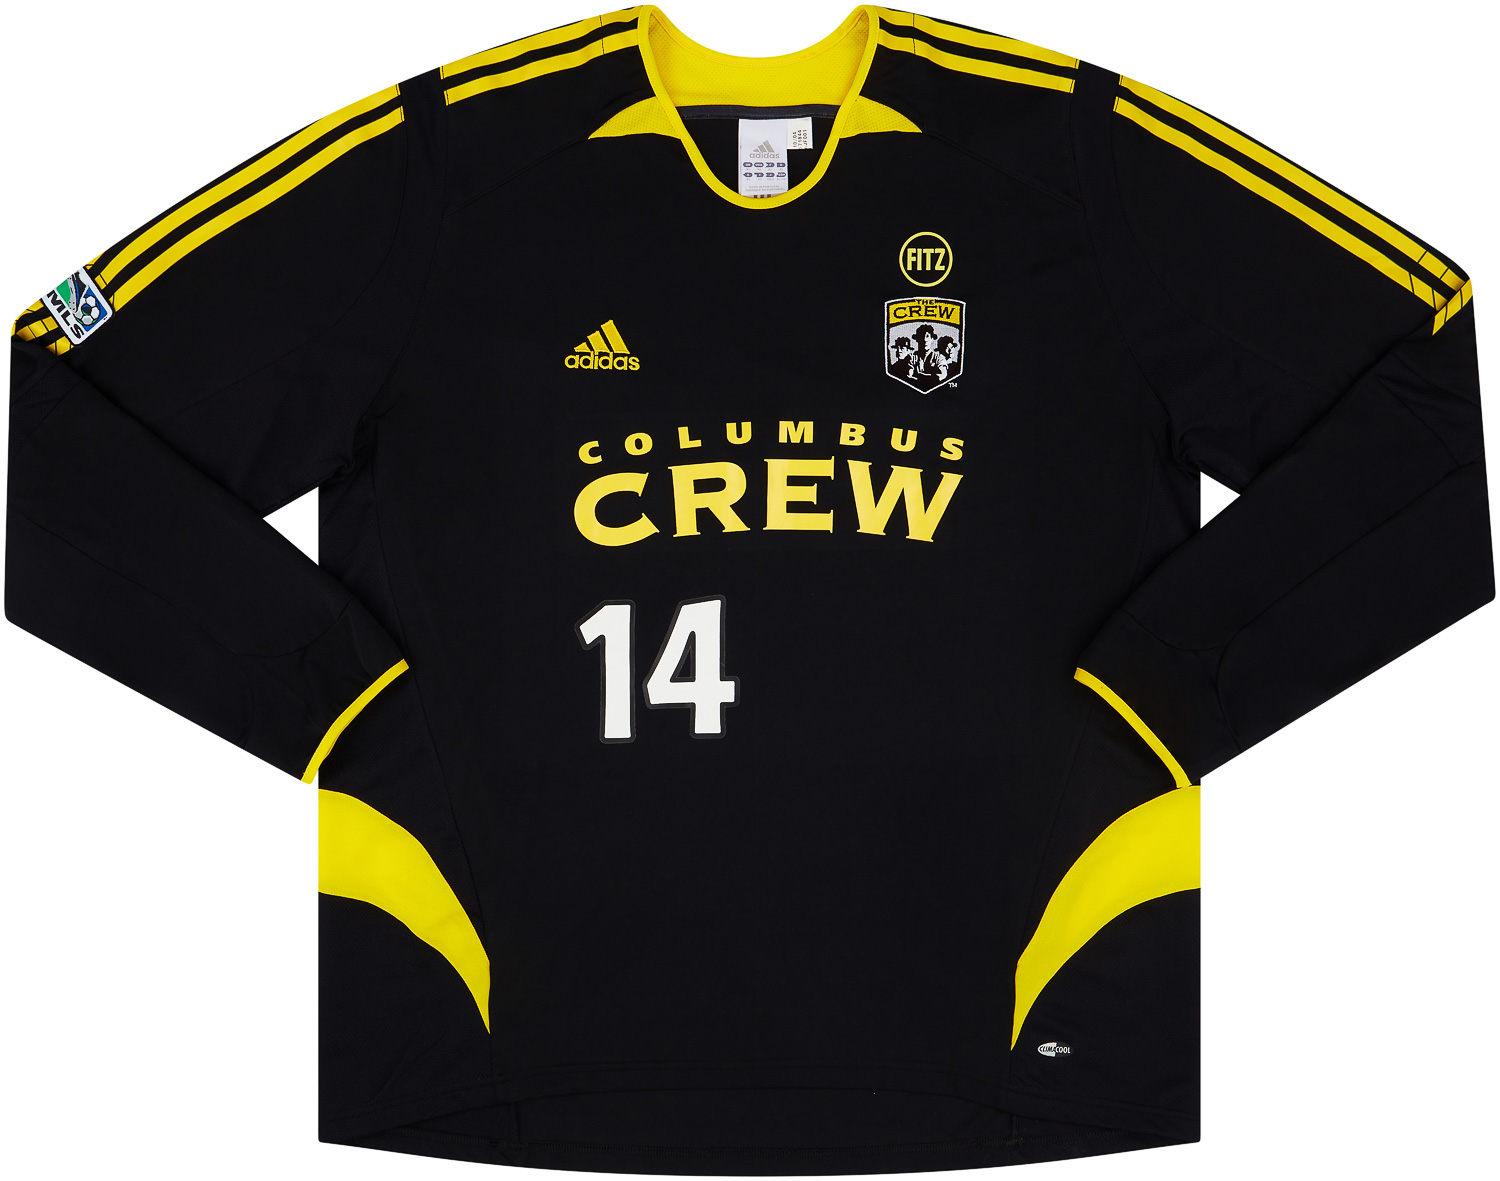 Retro Columbus Crew Shirt